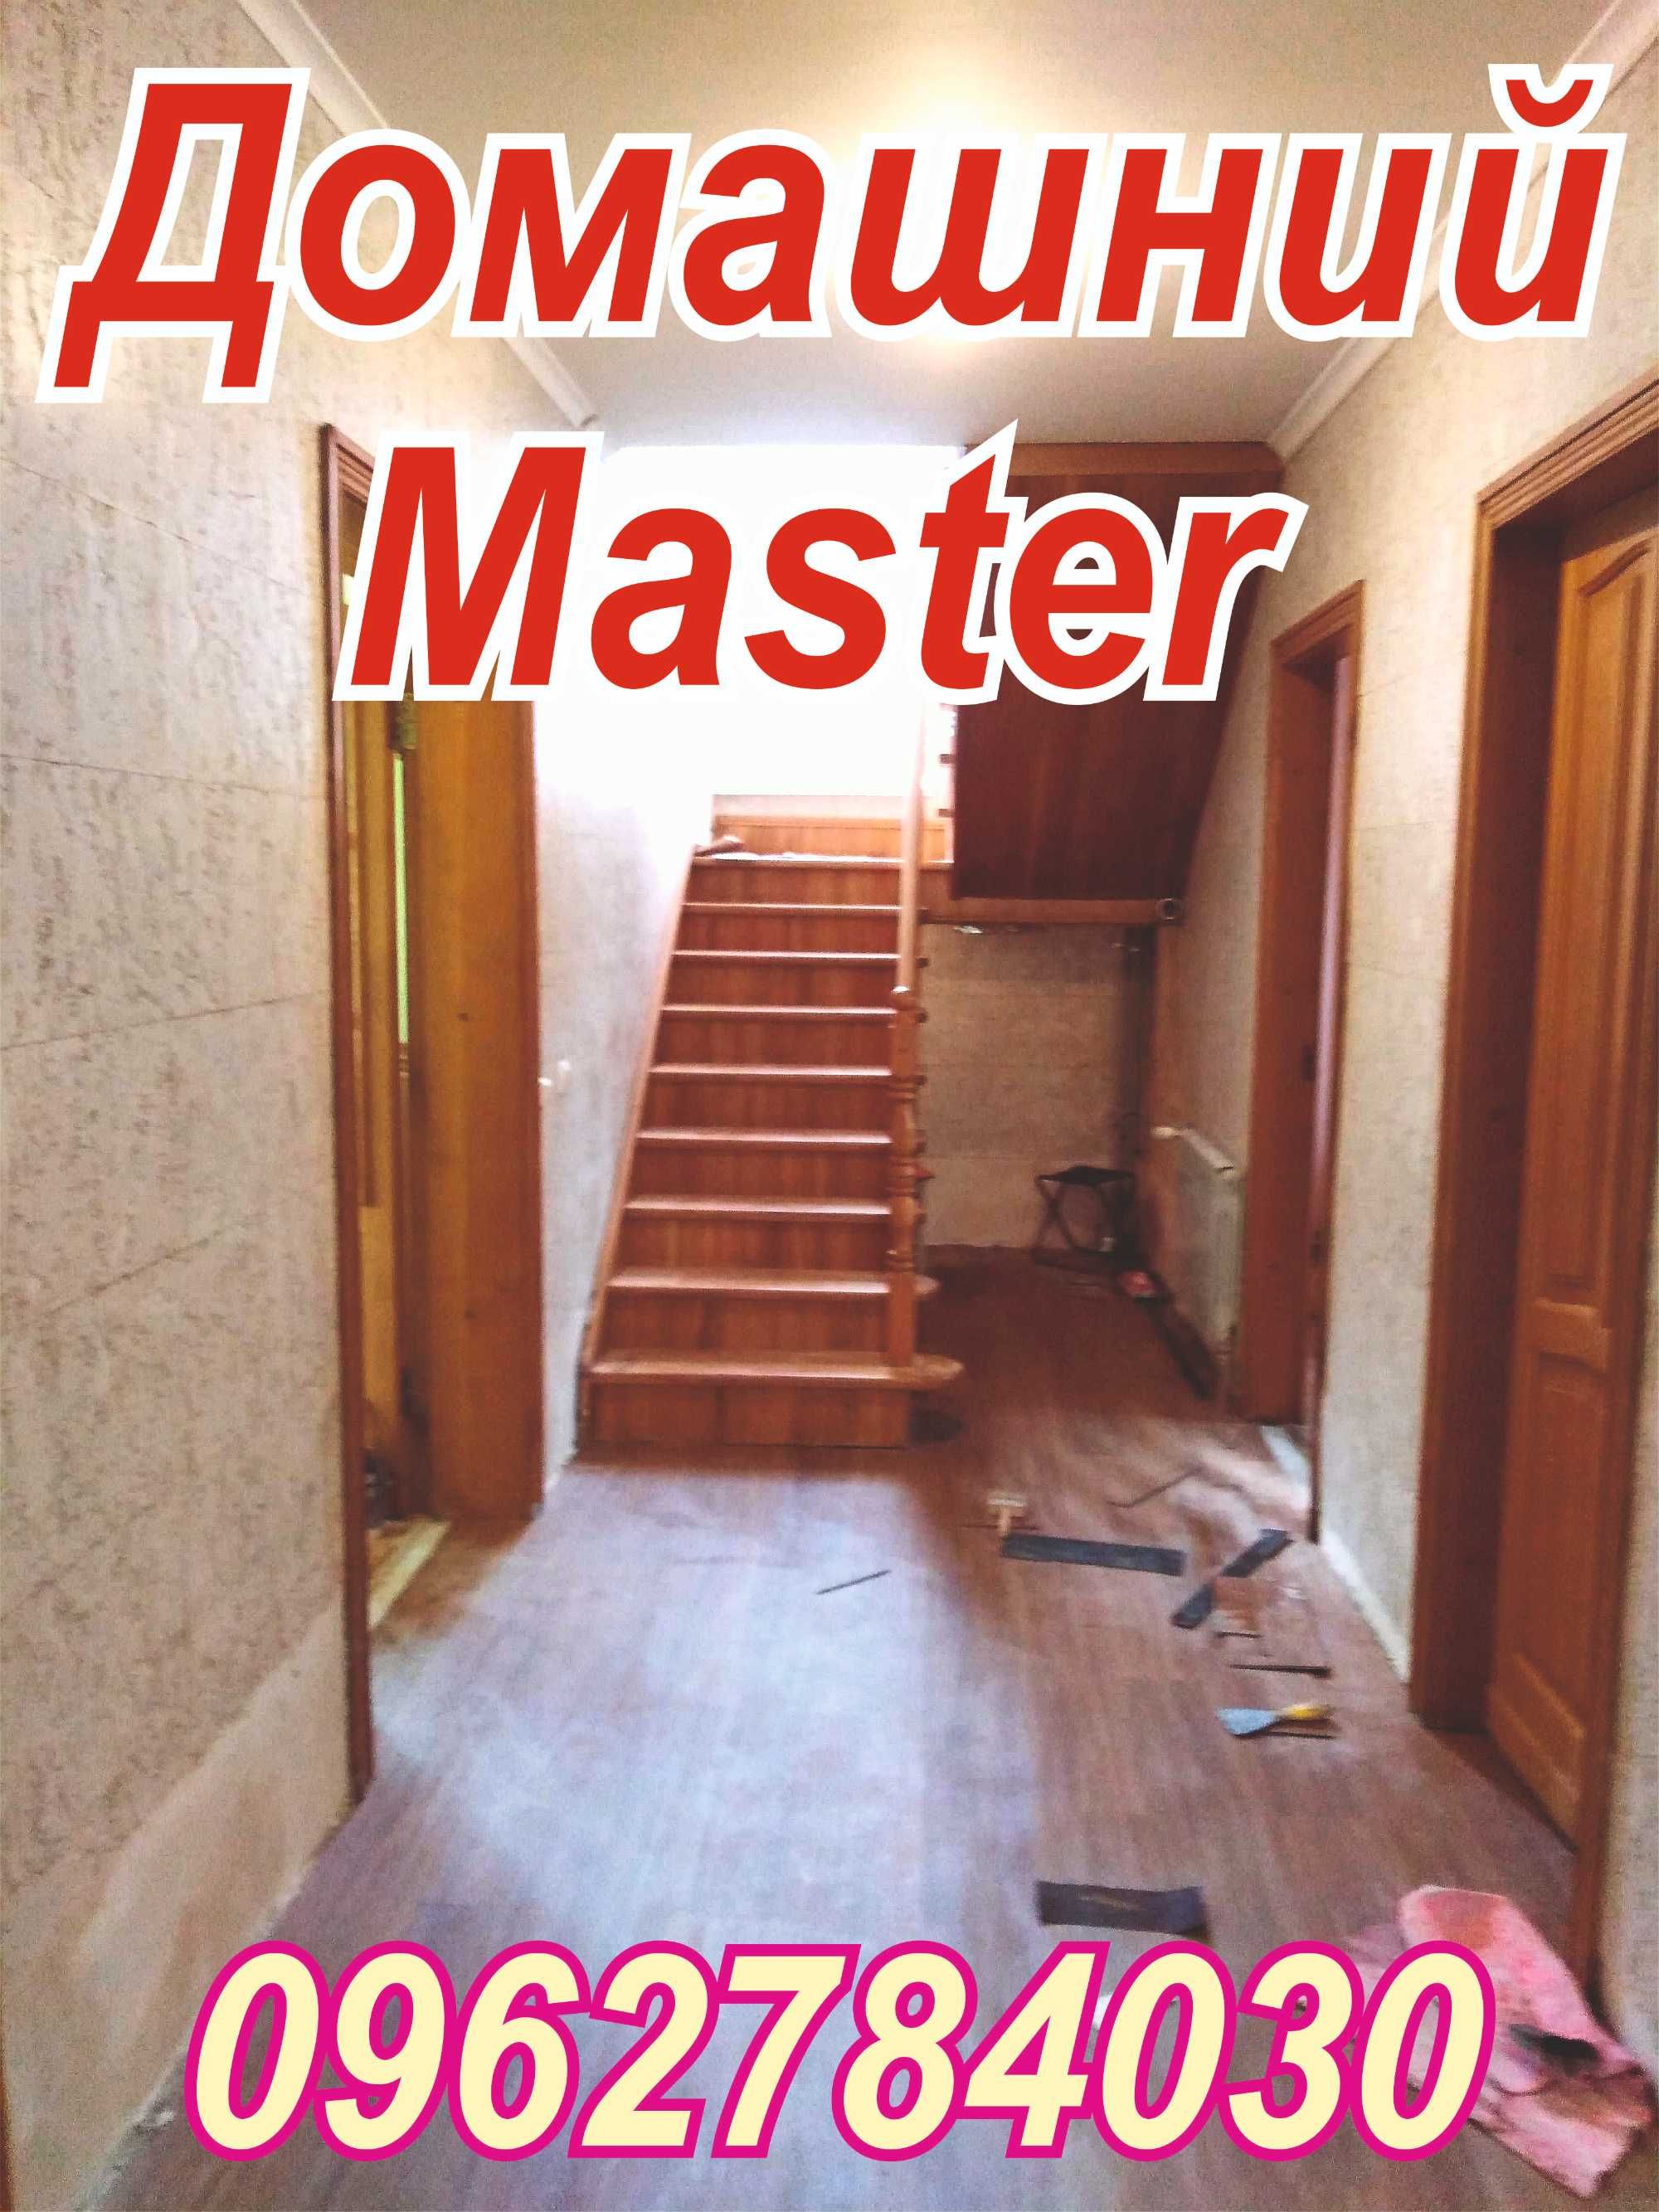 Домашний master (Все виды ремонта)